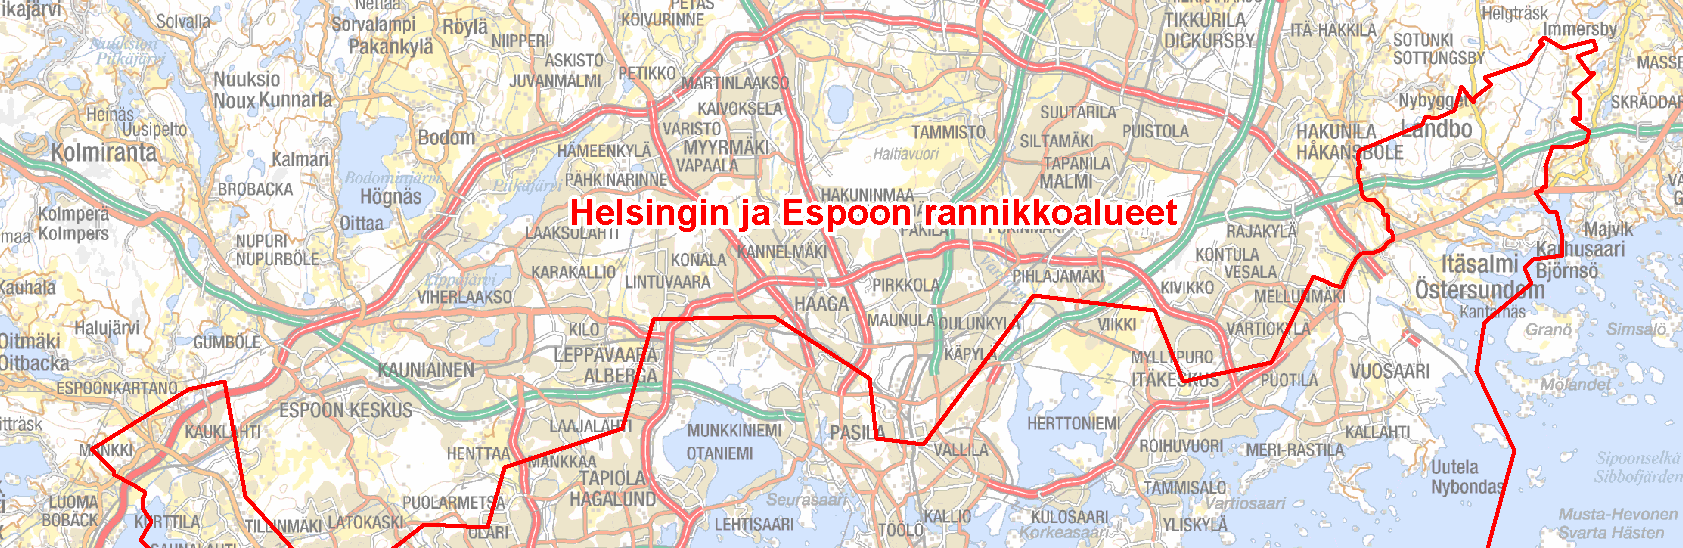 4 Alueen kuvaus Espoo ja Helsinki sijaitsevat Uudenmaan historiallisen maakunta-alueen keskivaiheilla. Alue on Suomen tiheimmin asuttua ja sinne keskittyy valtakunnallisesti suurimmat kasvupaineet.